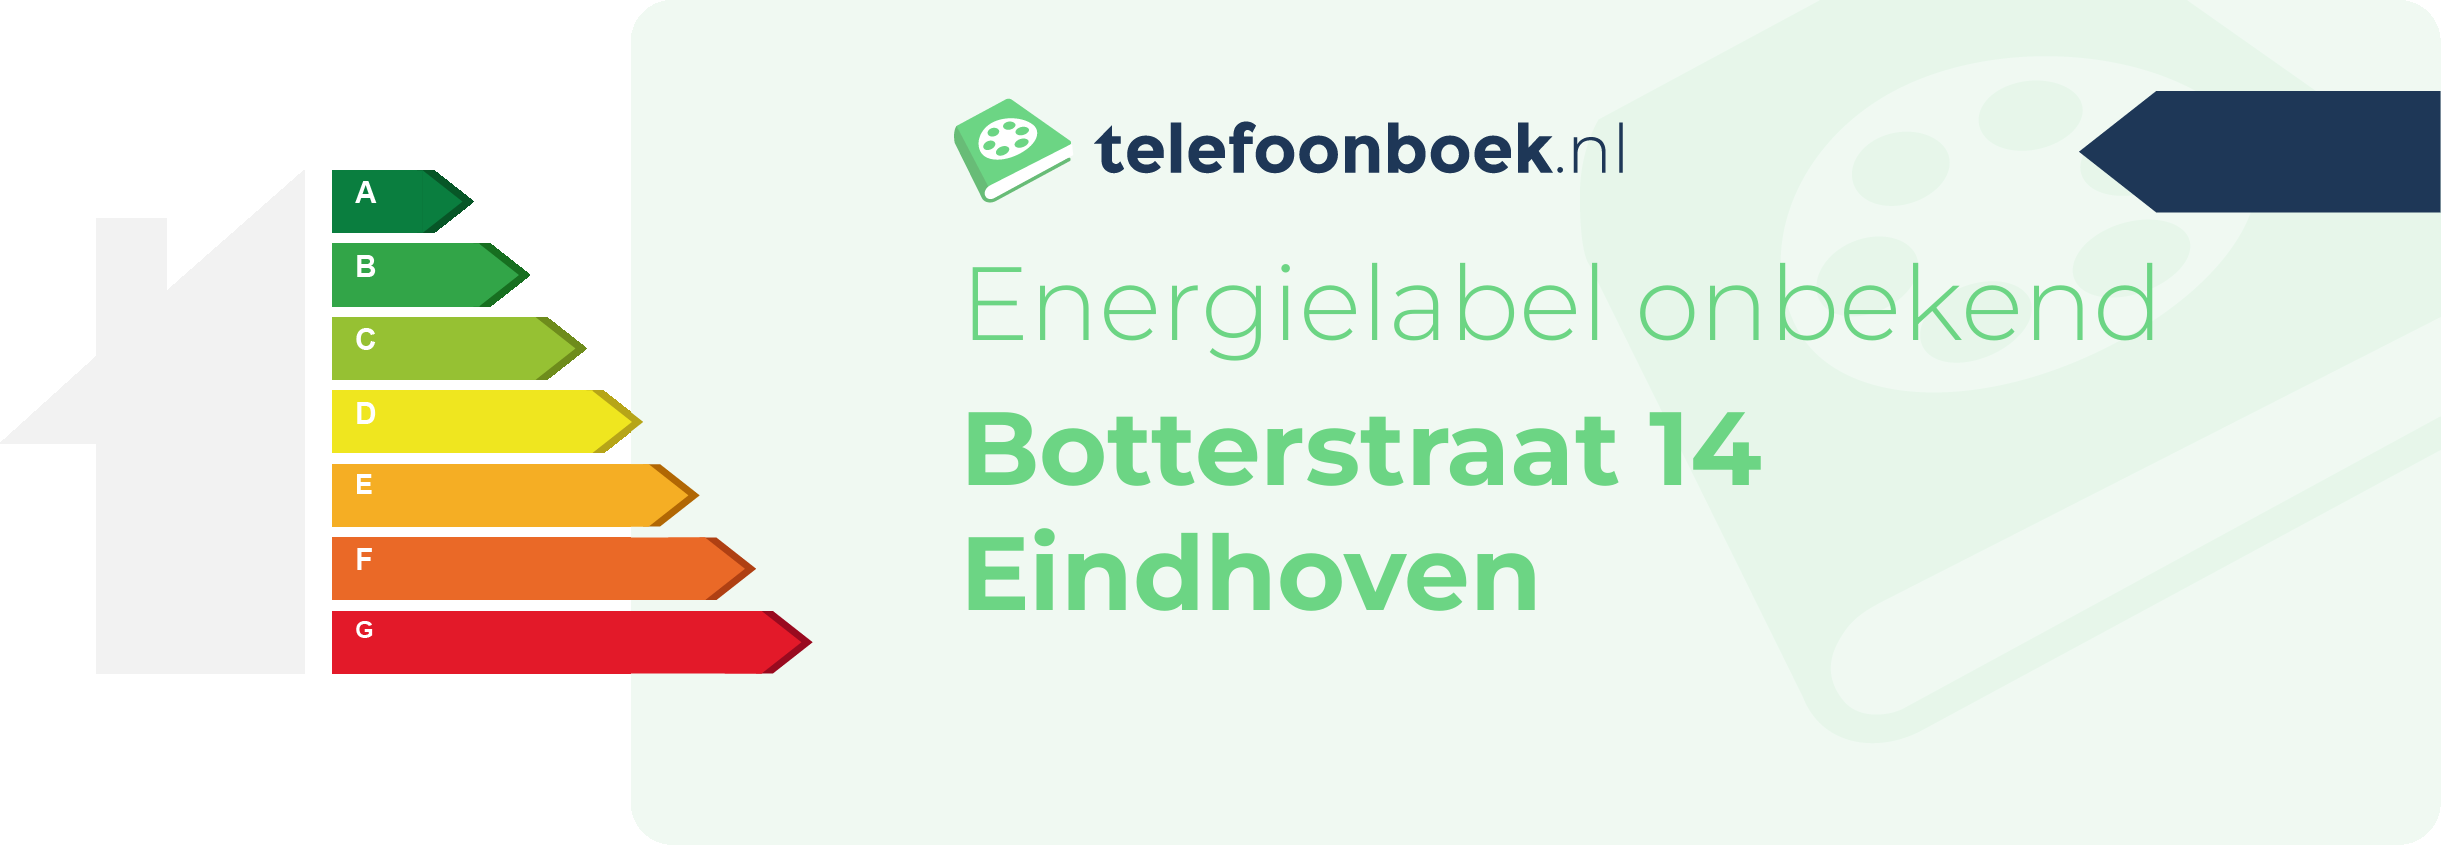 Energielabel Botterstraat 14 Eindhoven